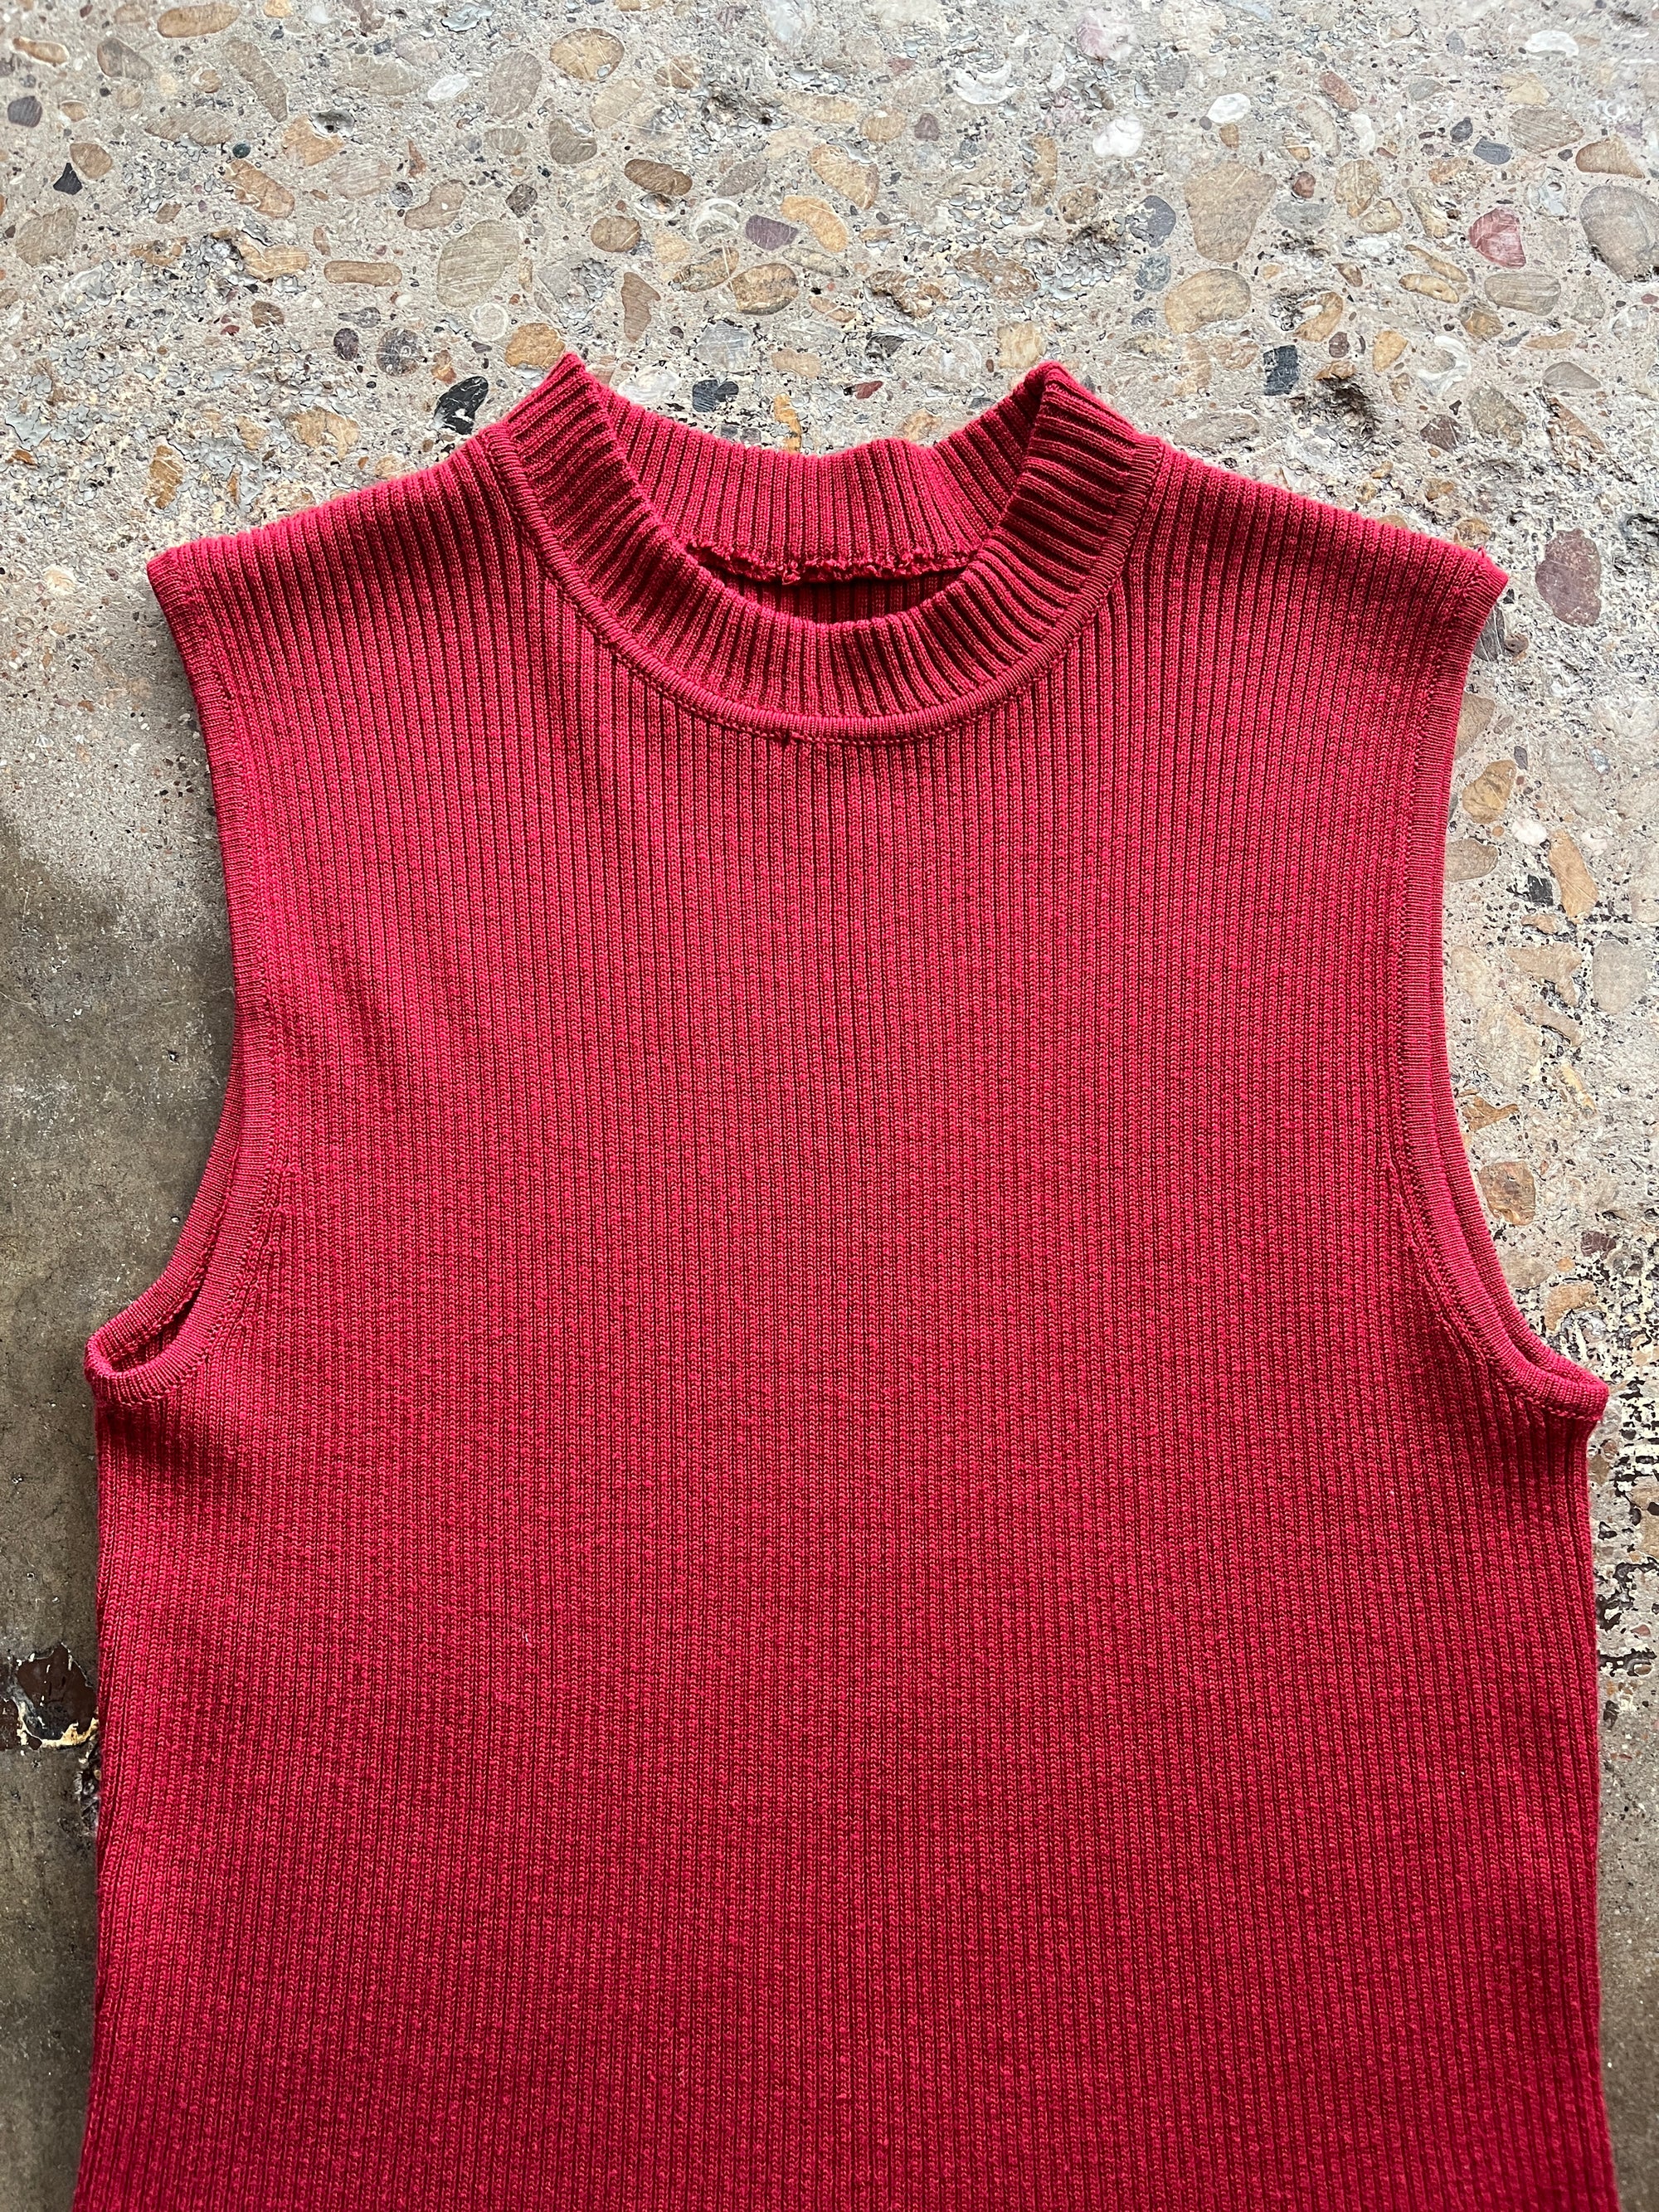 Red Mock Neck Knit Tank